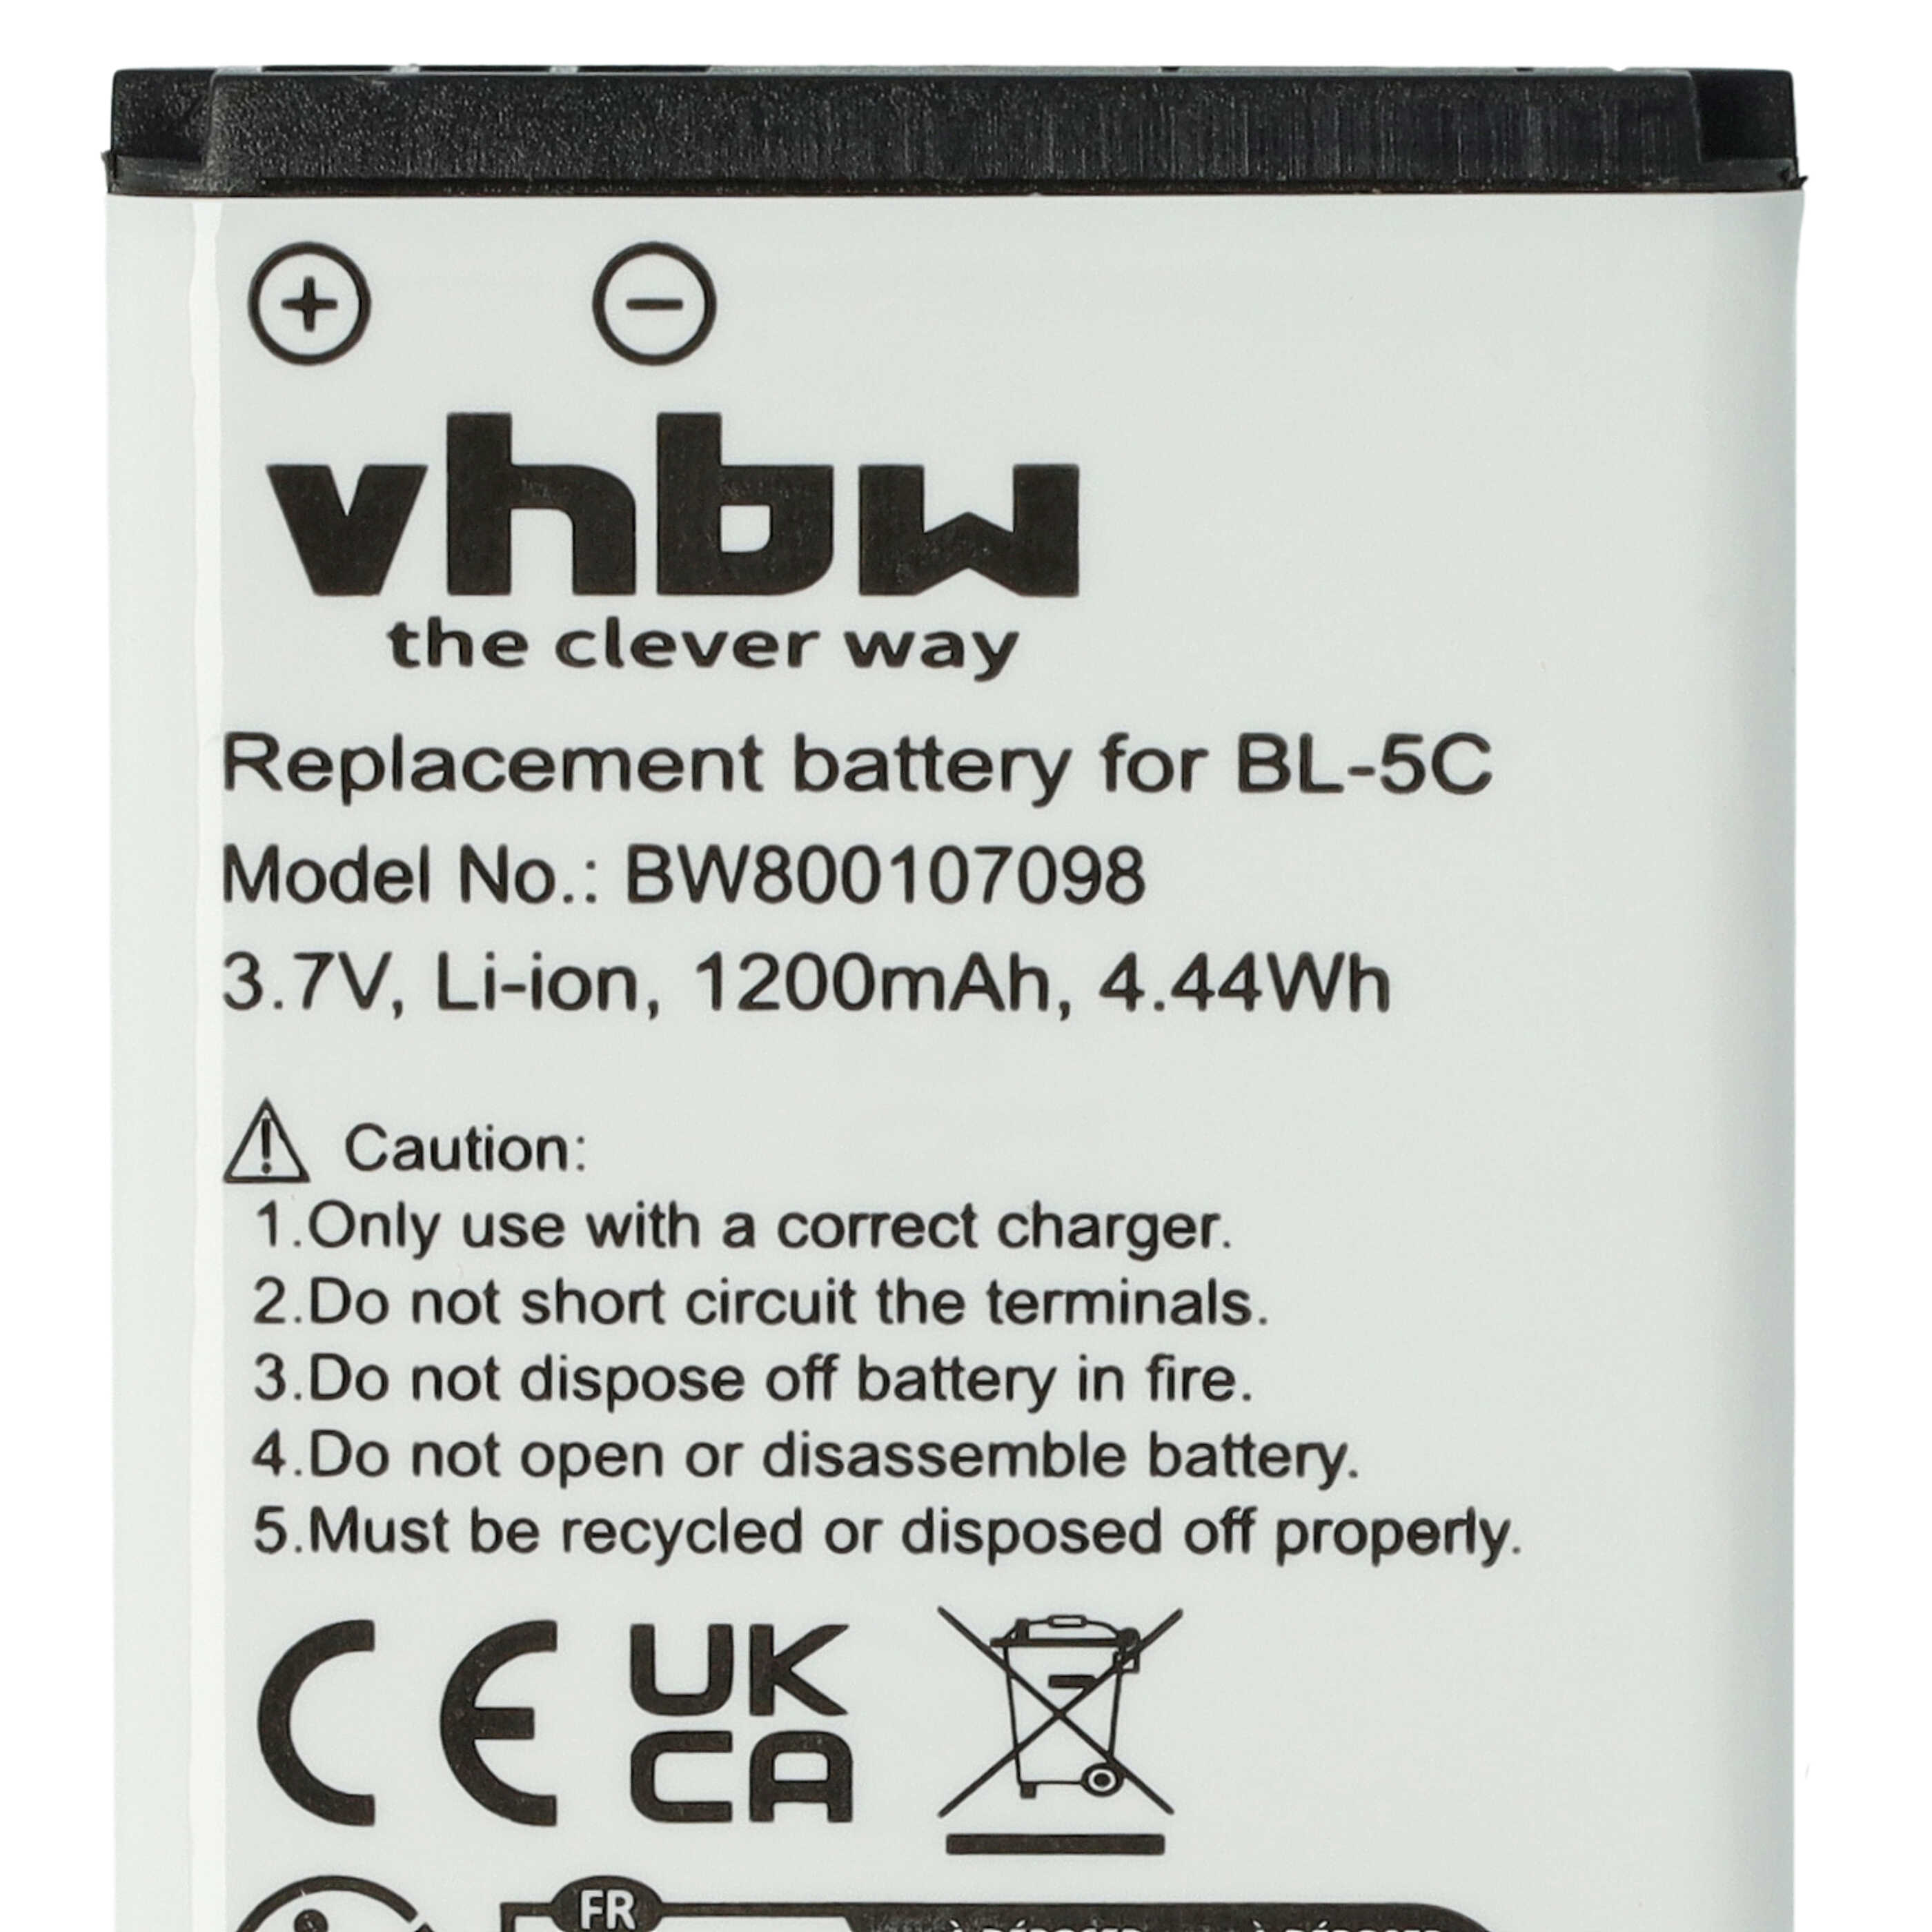 Batterie remplace MP-S-A1, RCB215, BS-16 pour téléphone portable - 1200mAh, 3,7V, Li-ion